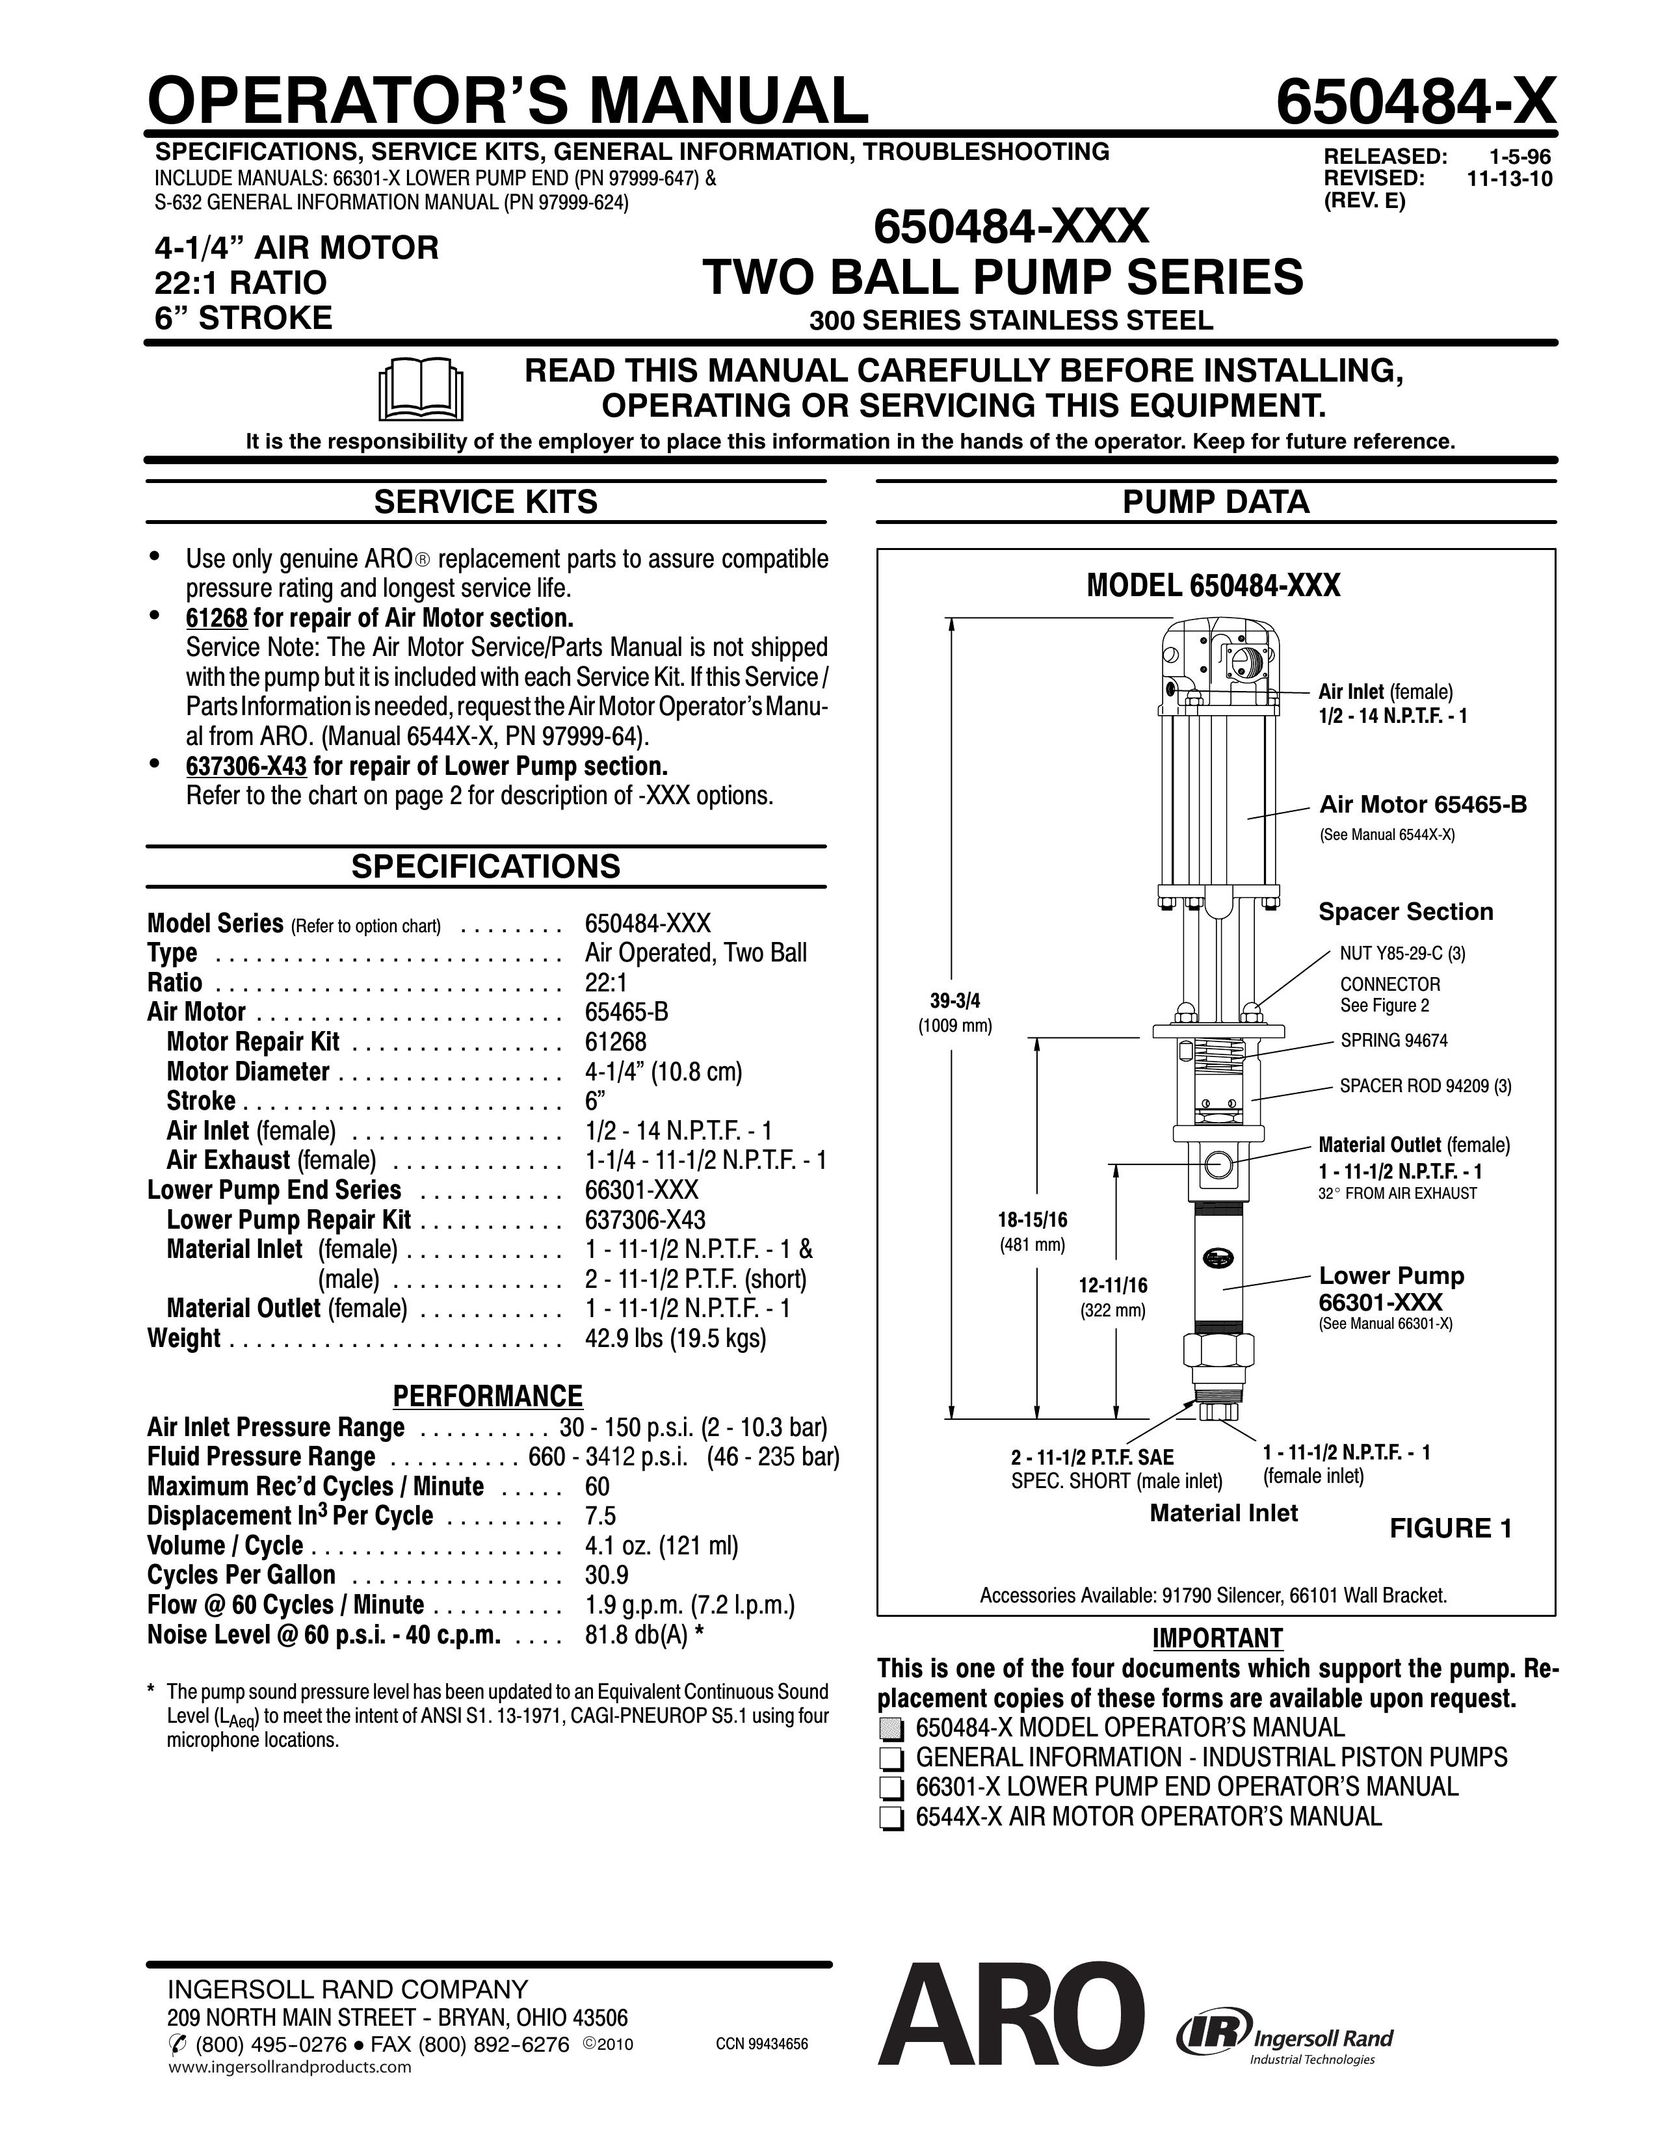 Ingersoll-Rand 650484-X Breast Pump User Manual